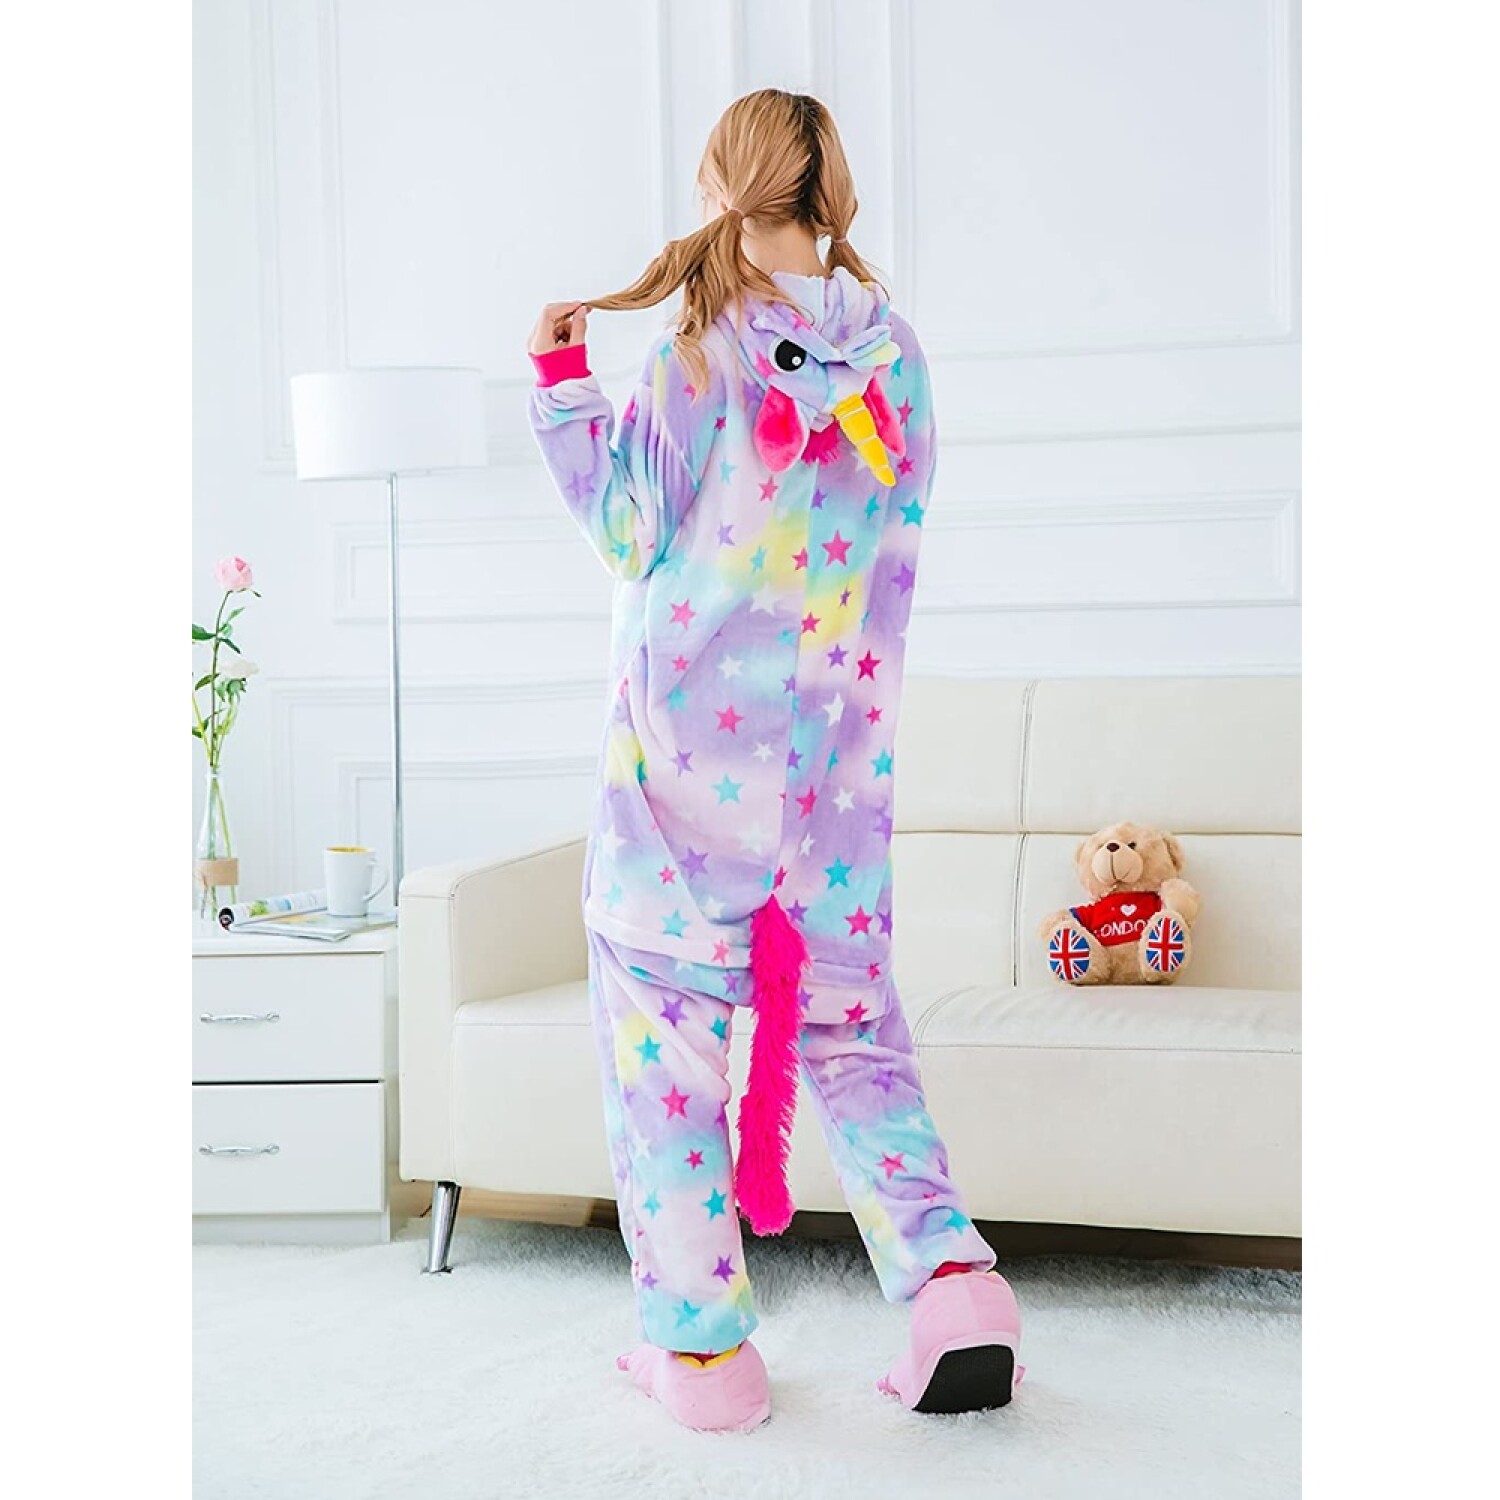 Pijama Infantil Unicornio Entero Niña Invierno Multicolor